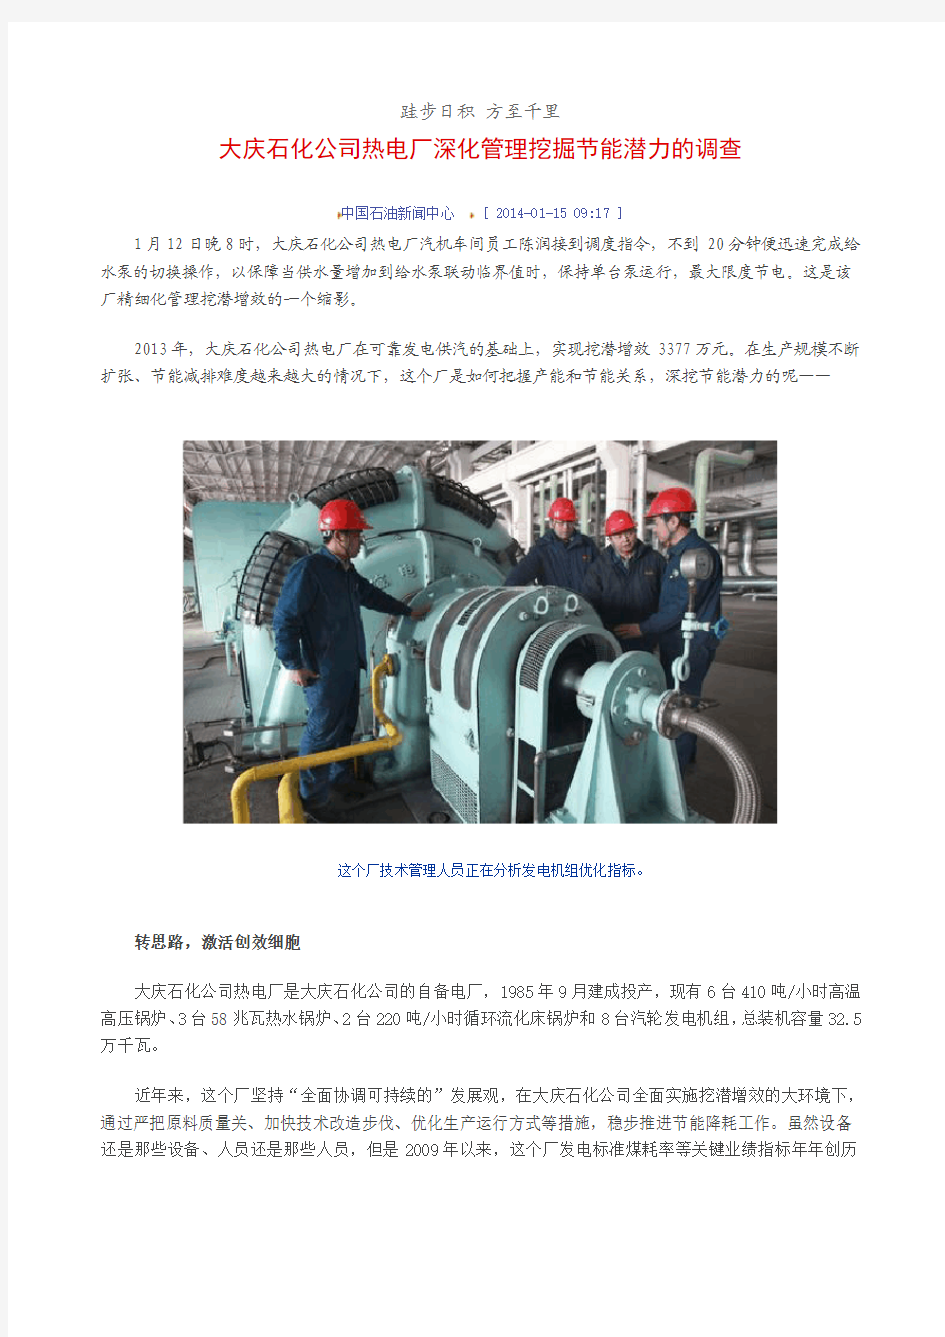 大庆石化热电厂“精细管理、降本增效、企业建设”相关网络报道